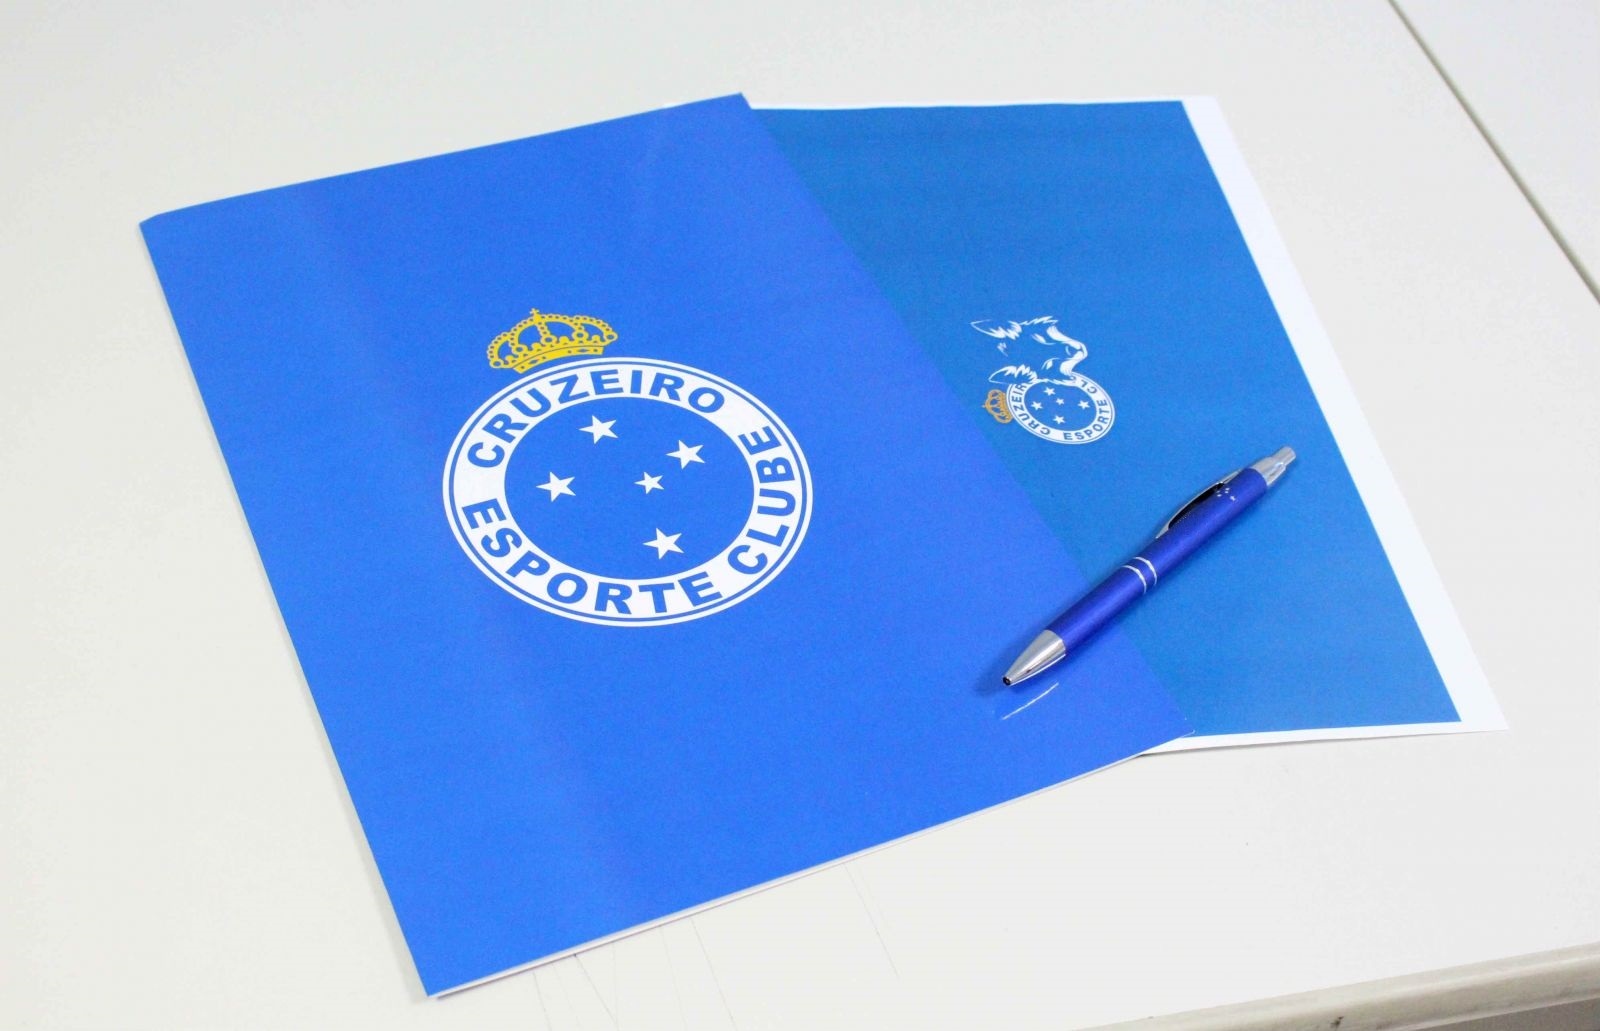 Conheça a proposta de modernização do estatuto do Cruzeiro Esporte Clube